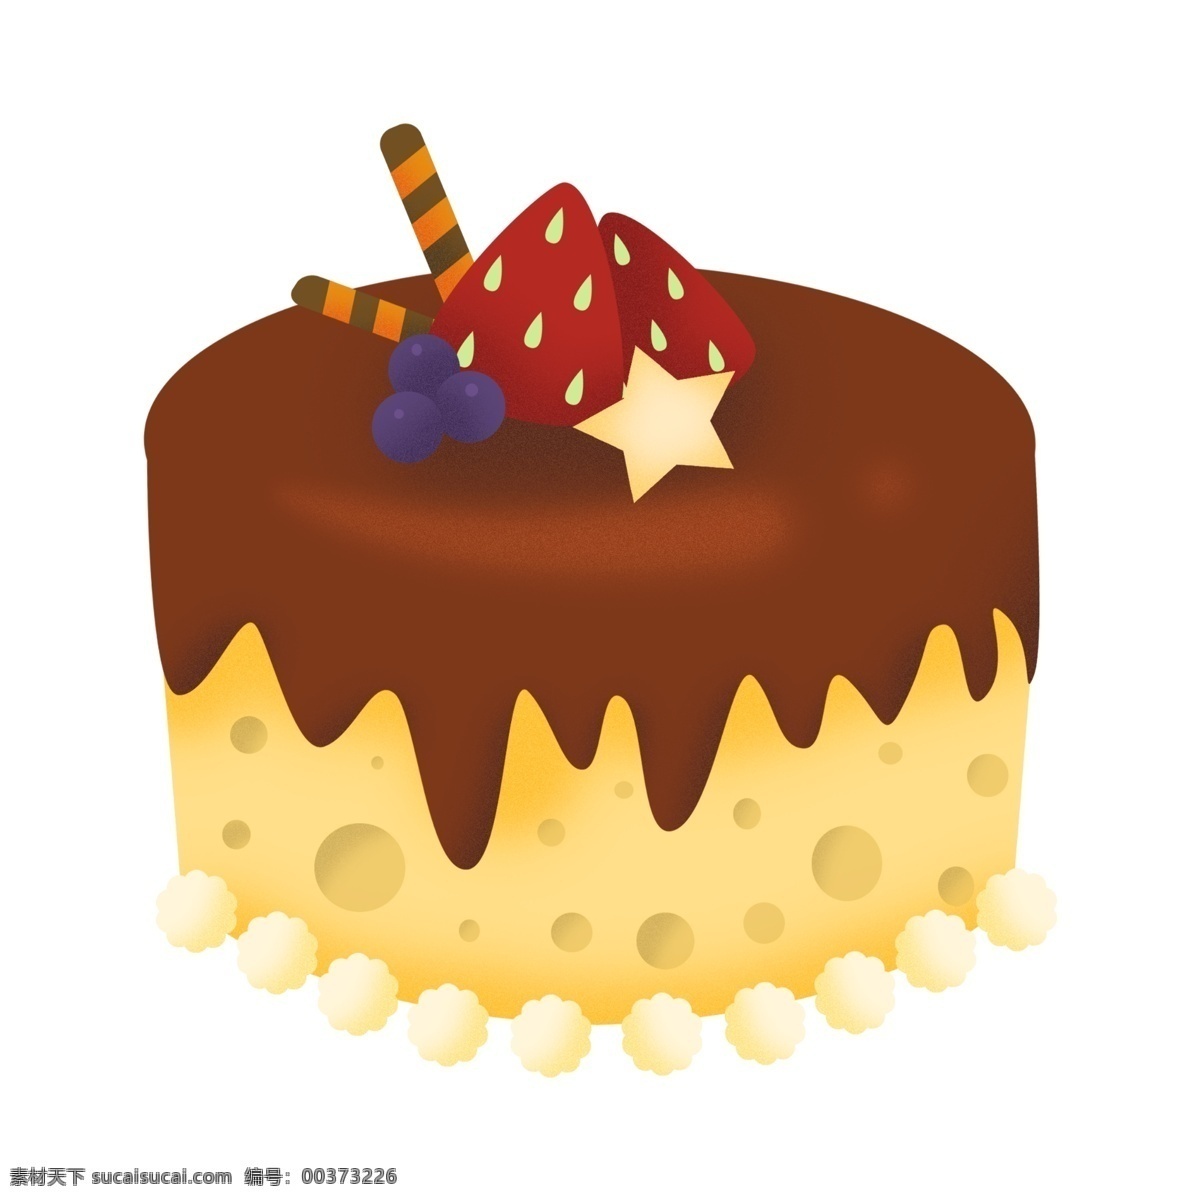 黄色 双层 生日蛋糕 草莓 甜食